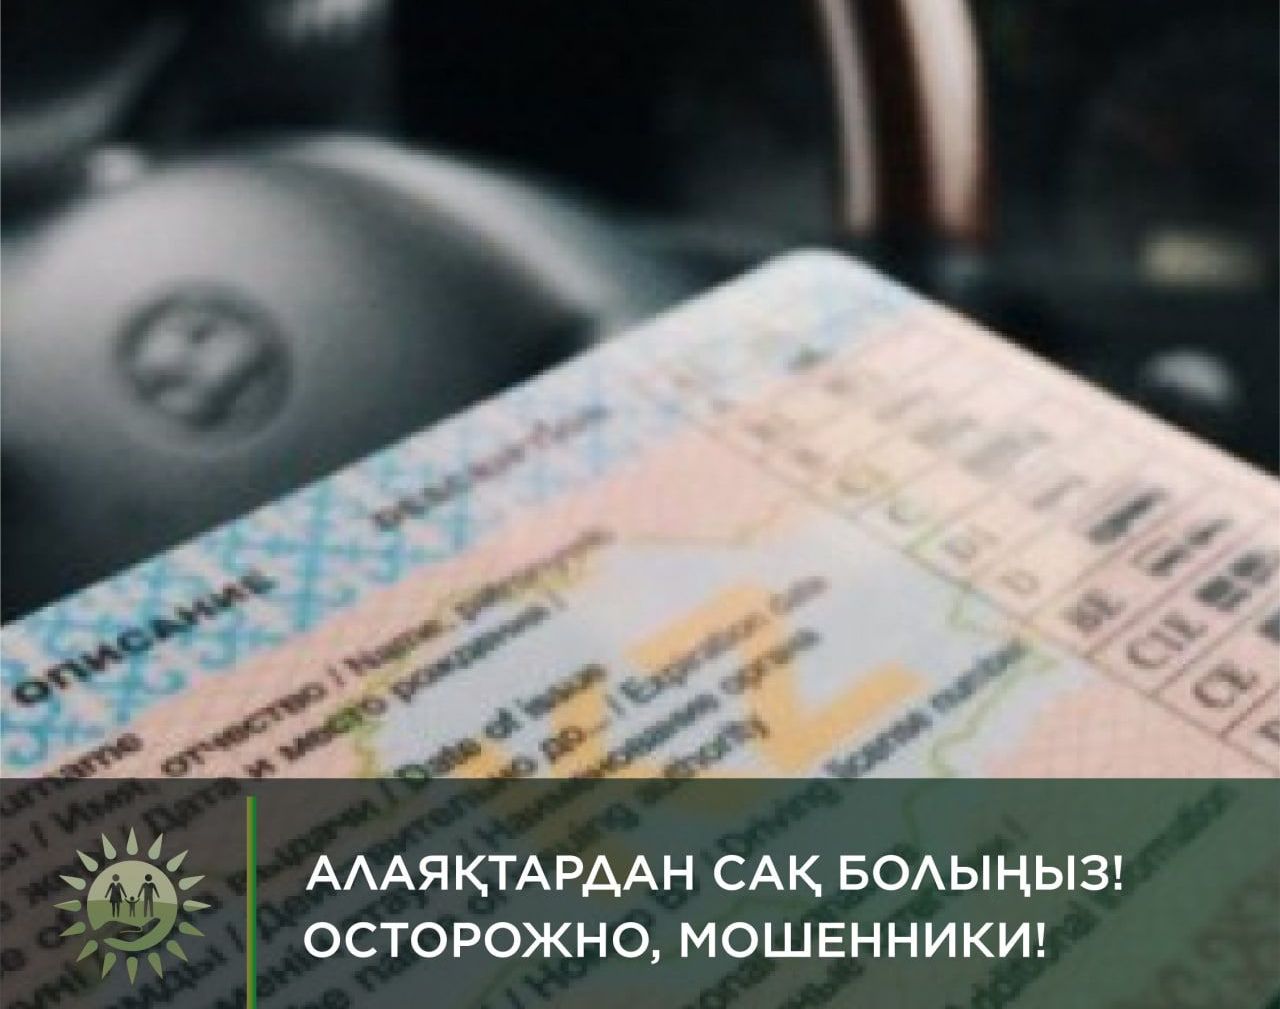 Казахстанцев предупреждают об интернет-мошенничествах с получением водительских прав